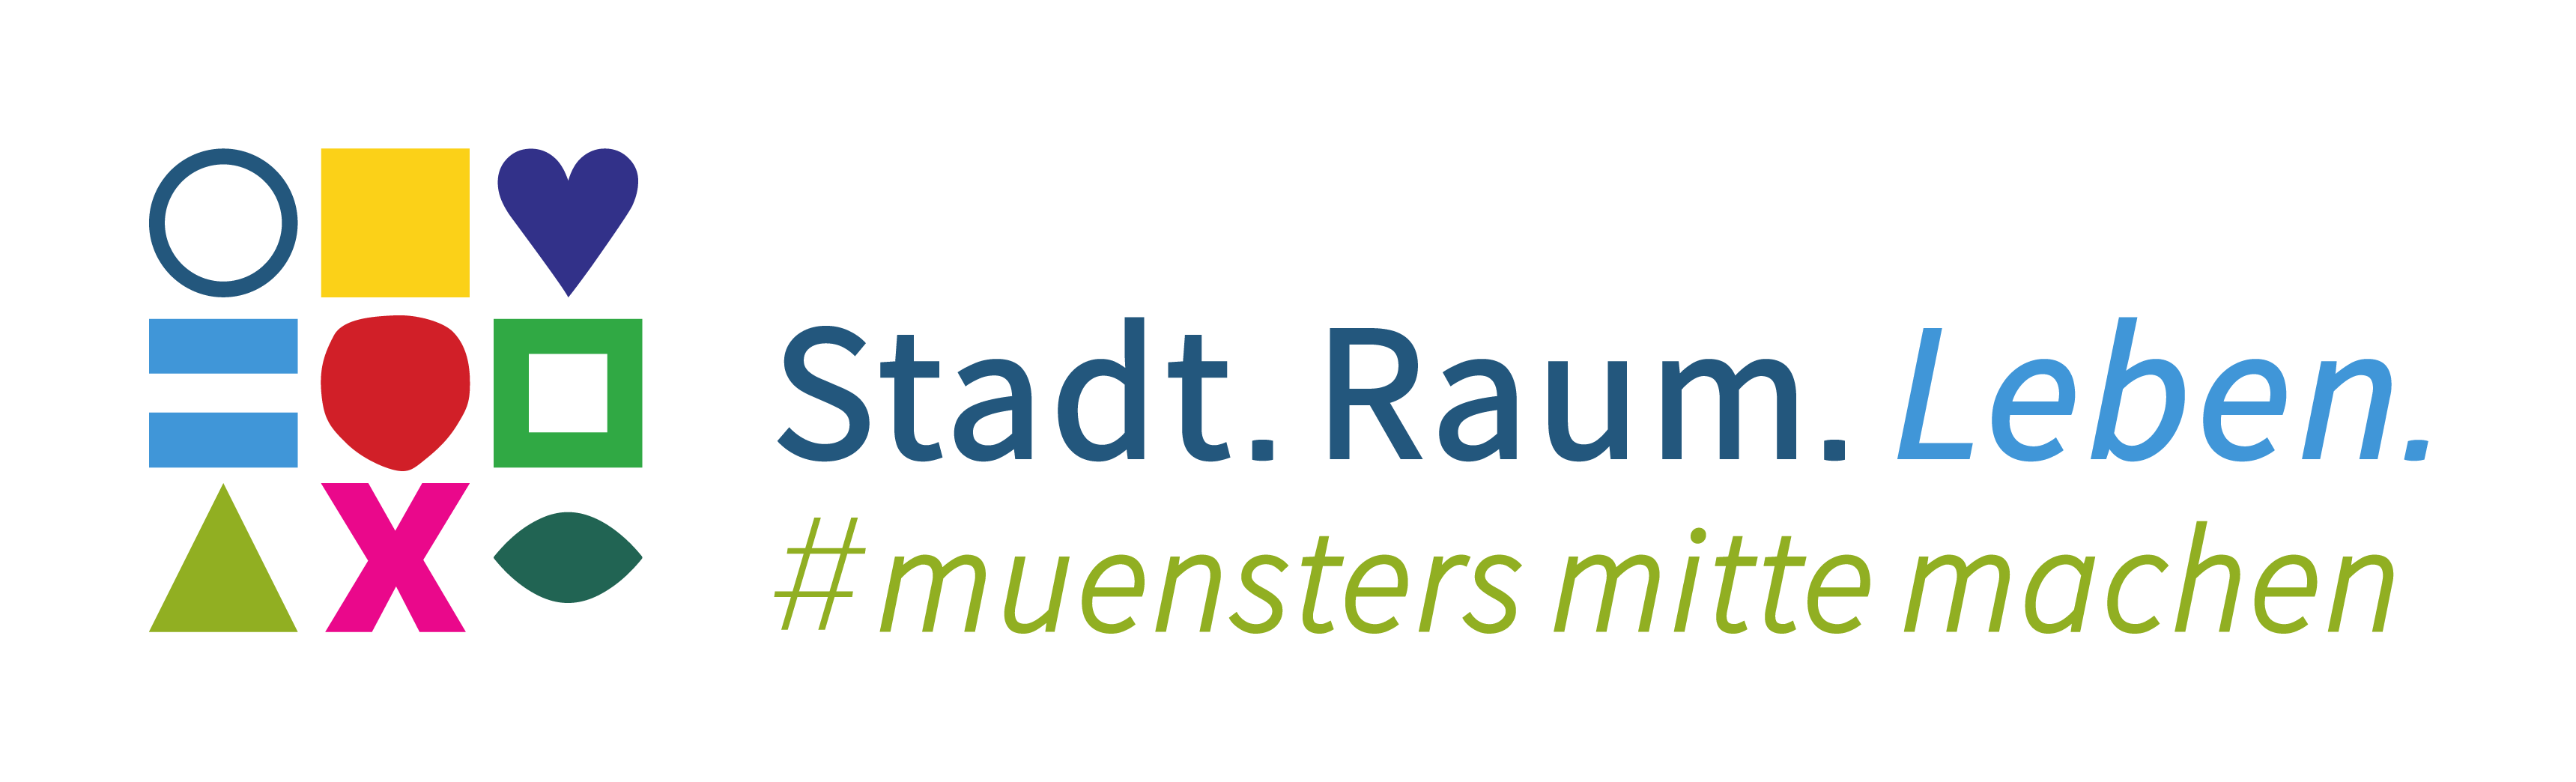 Logo "Stadt. Raum. Leben. #muenstersmittemachen"